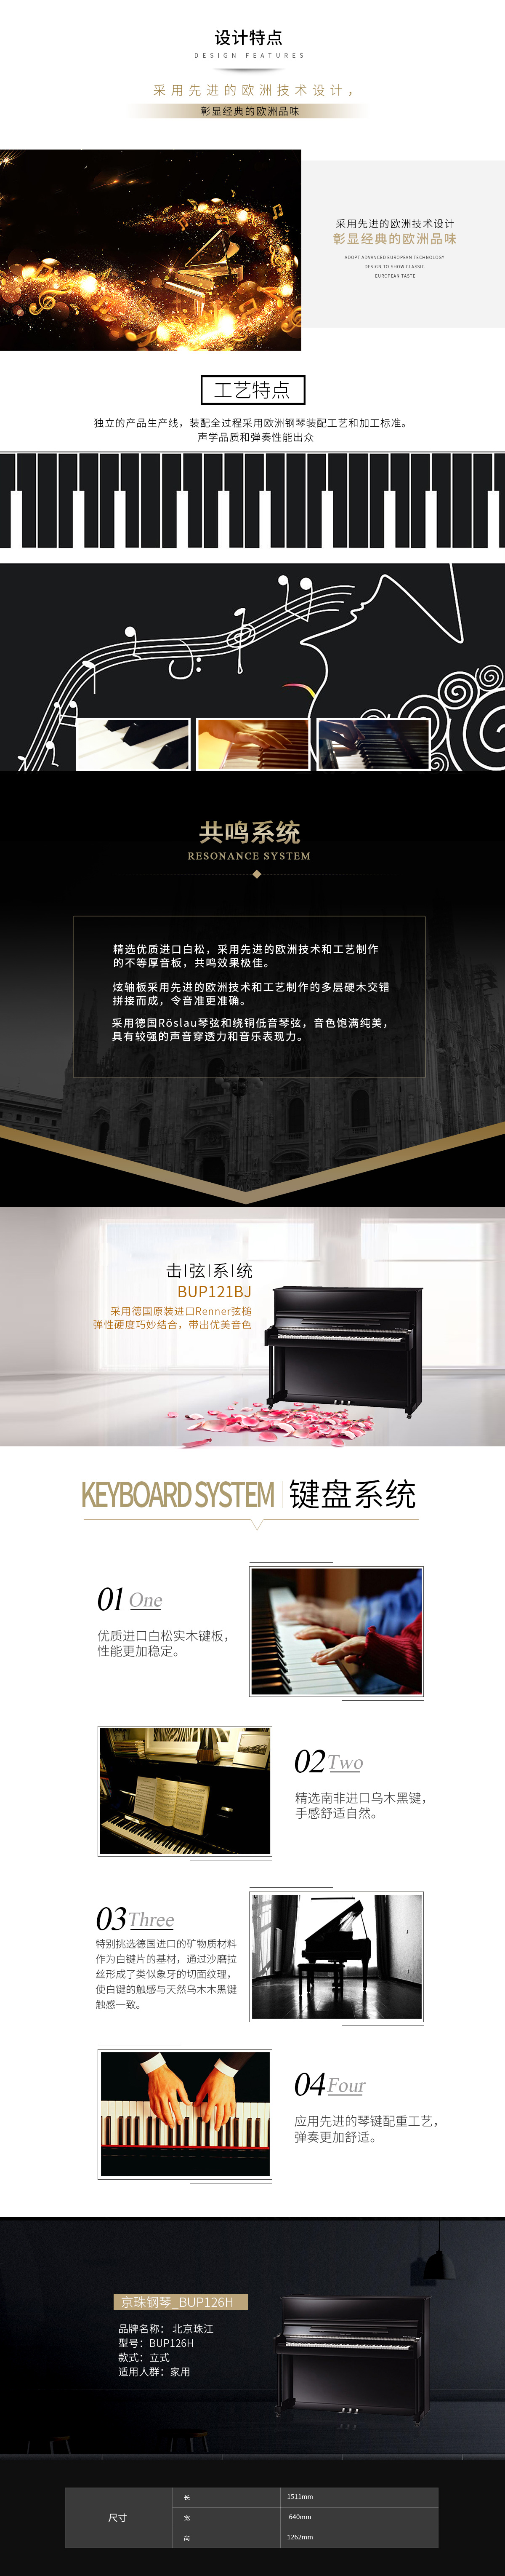 京珠钢琴-BUP126H.jpg